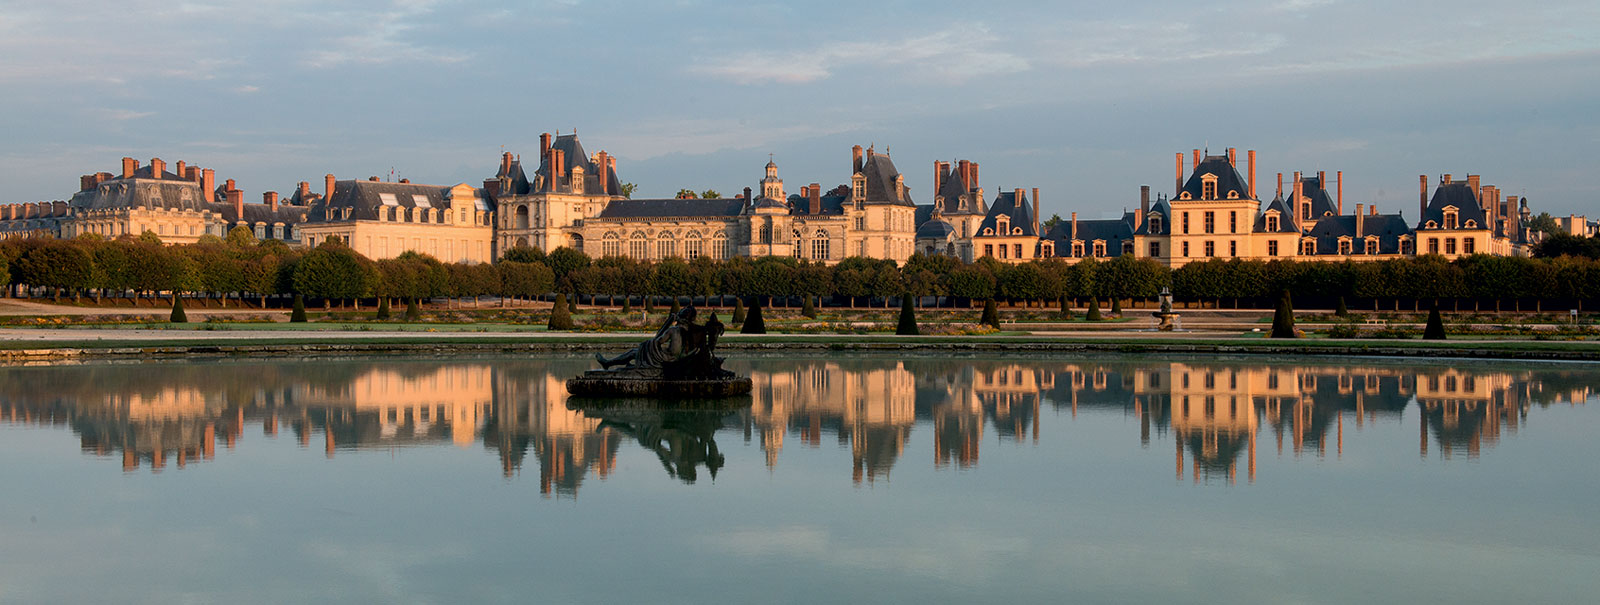 II. LES BÂTIMENTS ET COURS  Le site éducatif du château de Fontainebleau